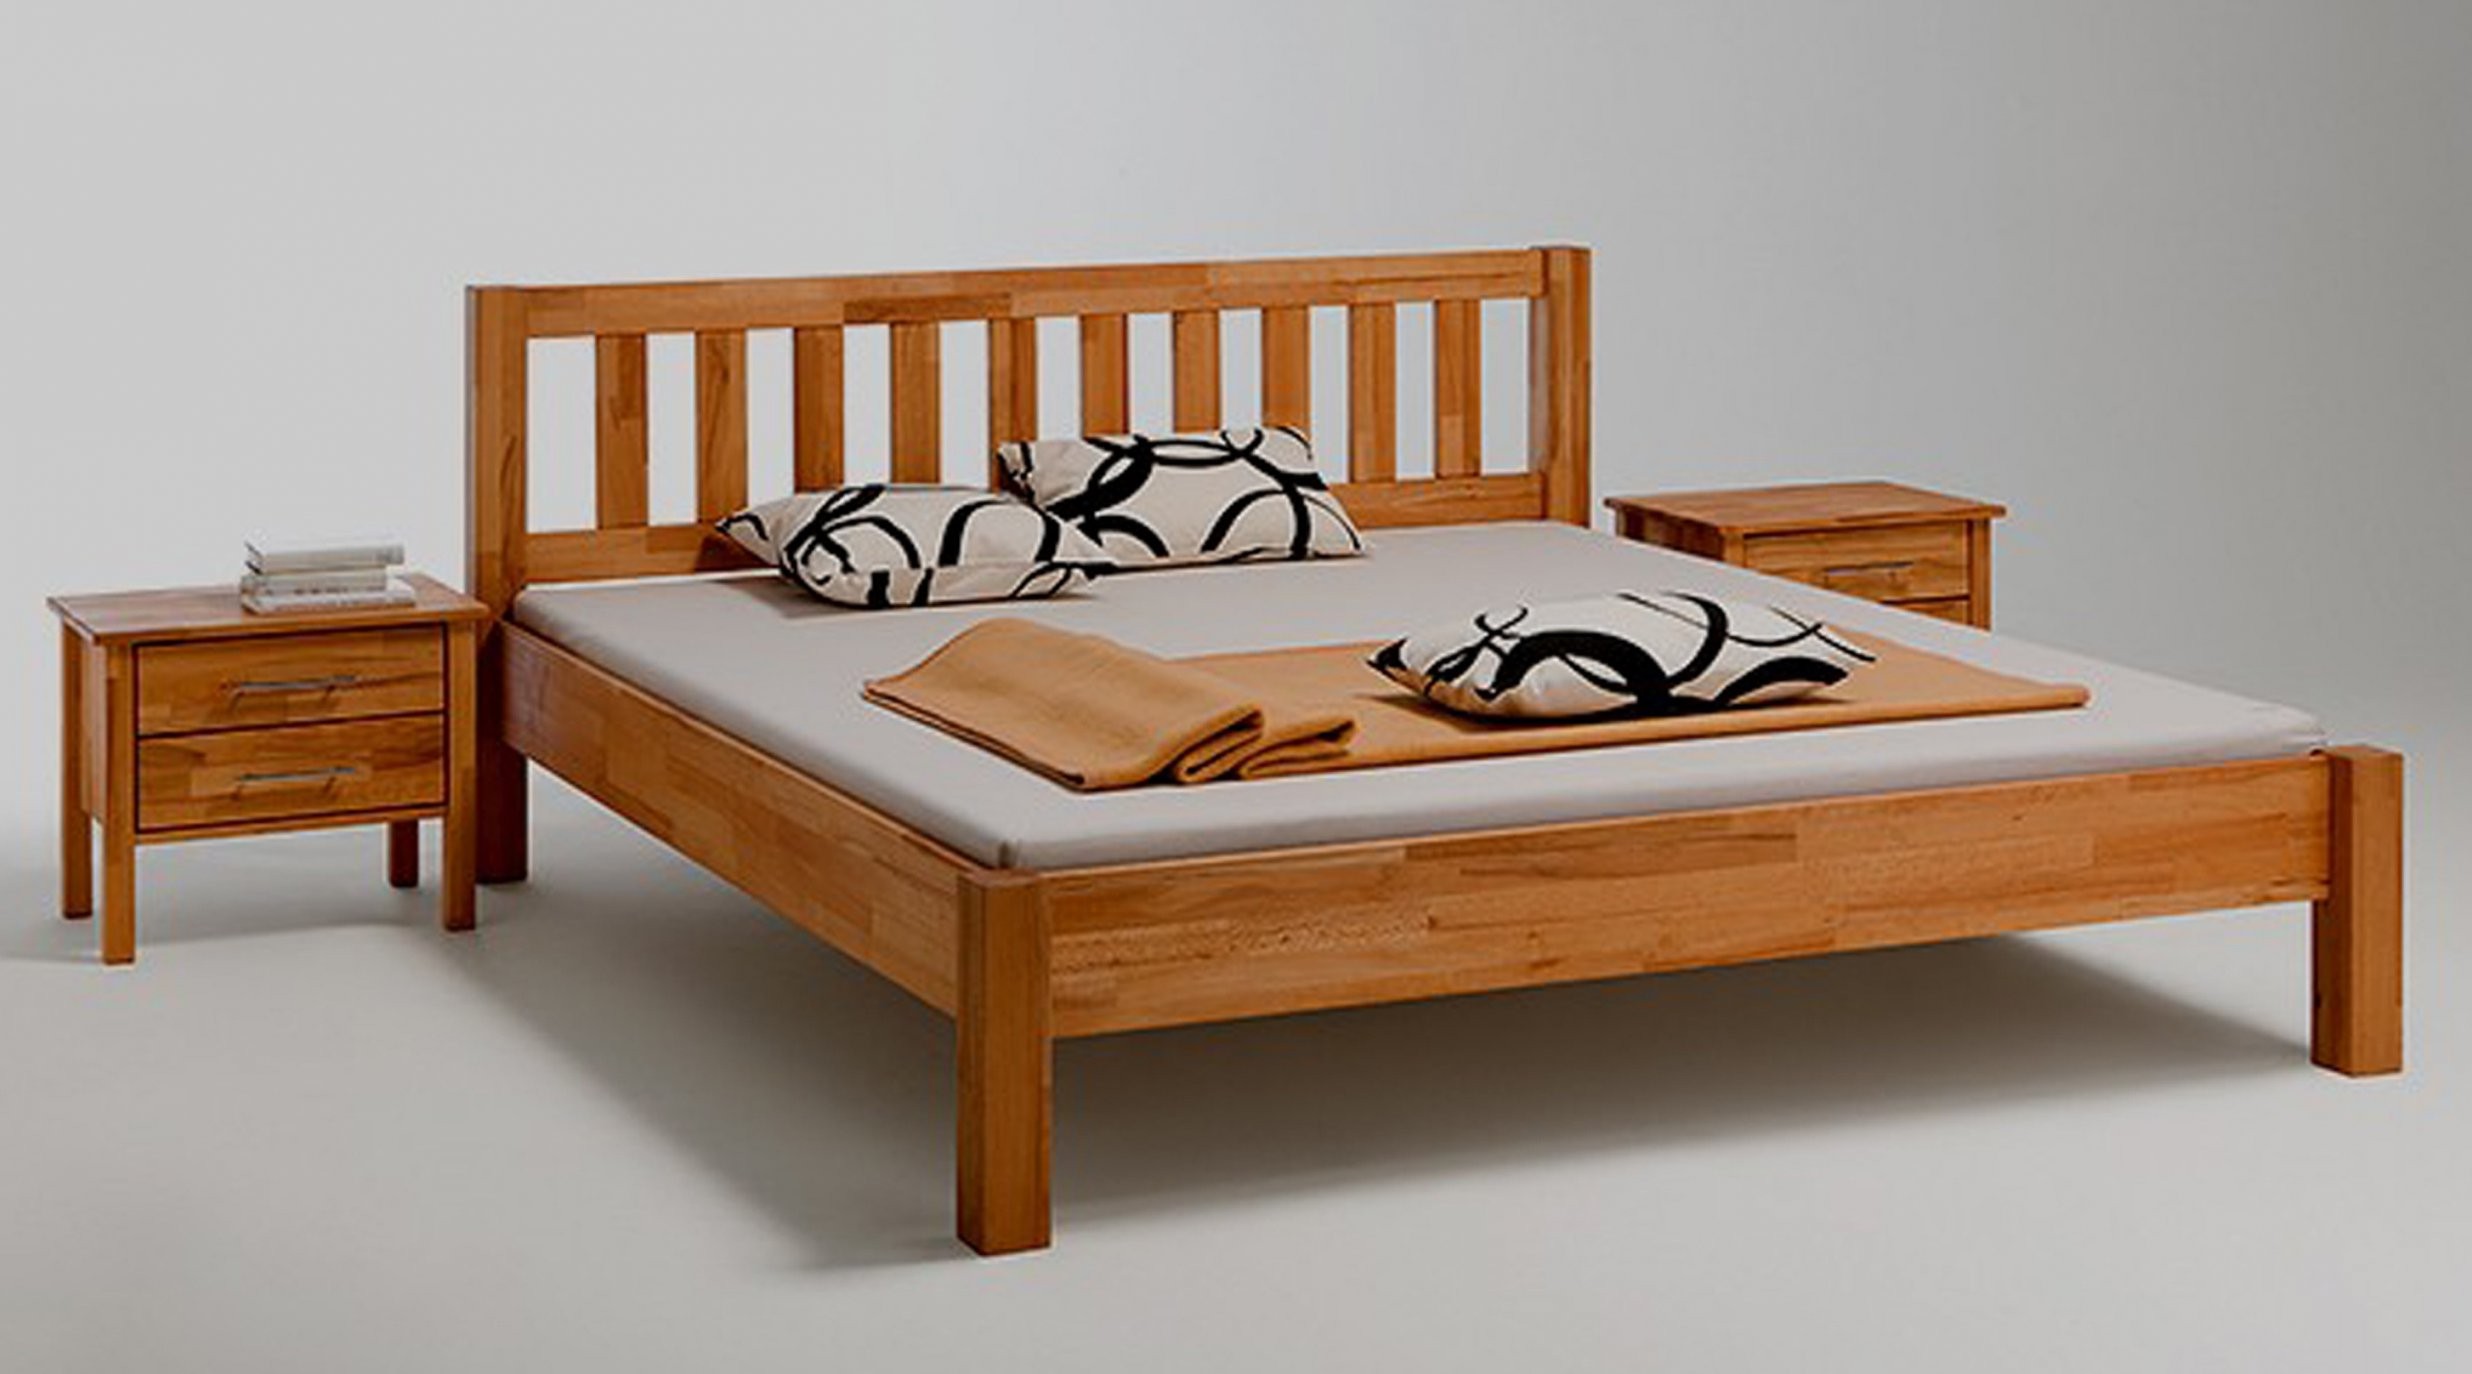 Bemerkenswert Bett Massivholz 160X200 Massivholzbett In Kernbuche von Bett 160X200 Massivholz Photo